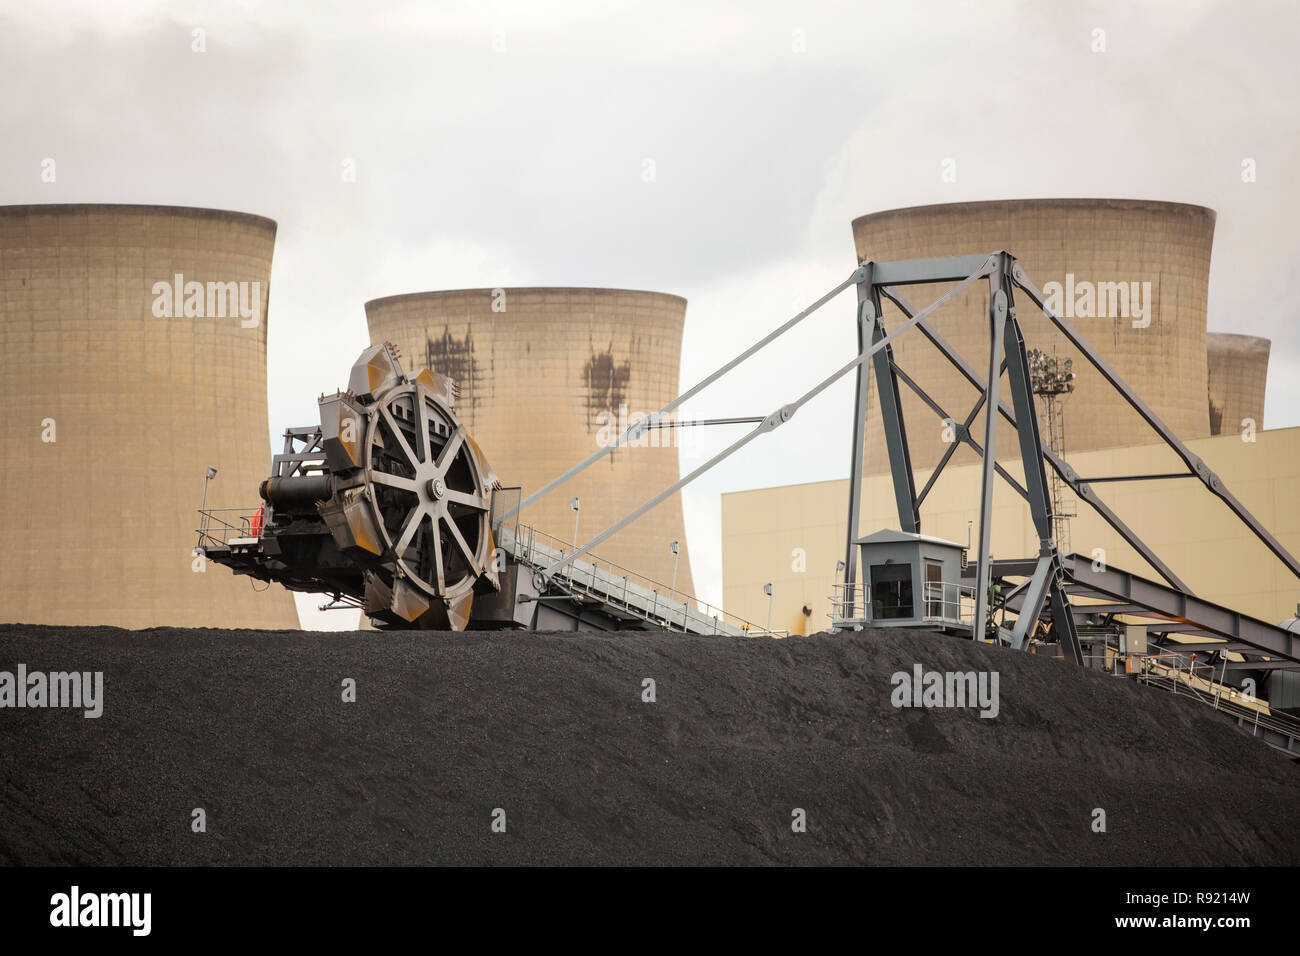 Kohle Schüttungen bei Drax power station in Yorkshire, UK, die der größte Emittent von C02 in Europa. Sie sind derzeit die Umwandlung der Power Station einen Anteil der Biokraftstoffe sowie brennen Kohle. Die meisten Holz ist aus den USA stammen, mit viel von ihm aus Urwald, nicht gerade ein umweltfreundliches bewegen. Stockfoto